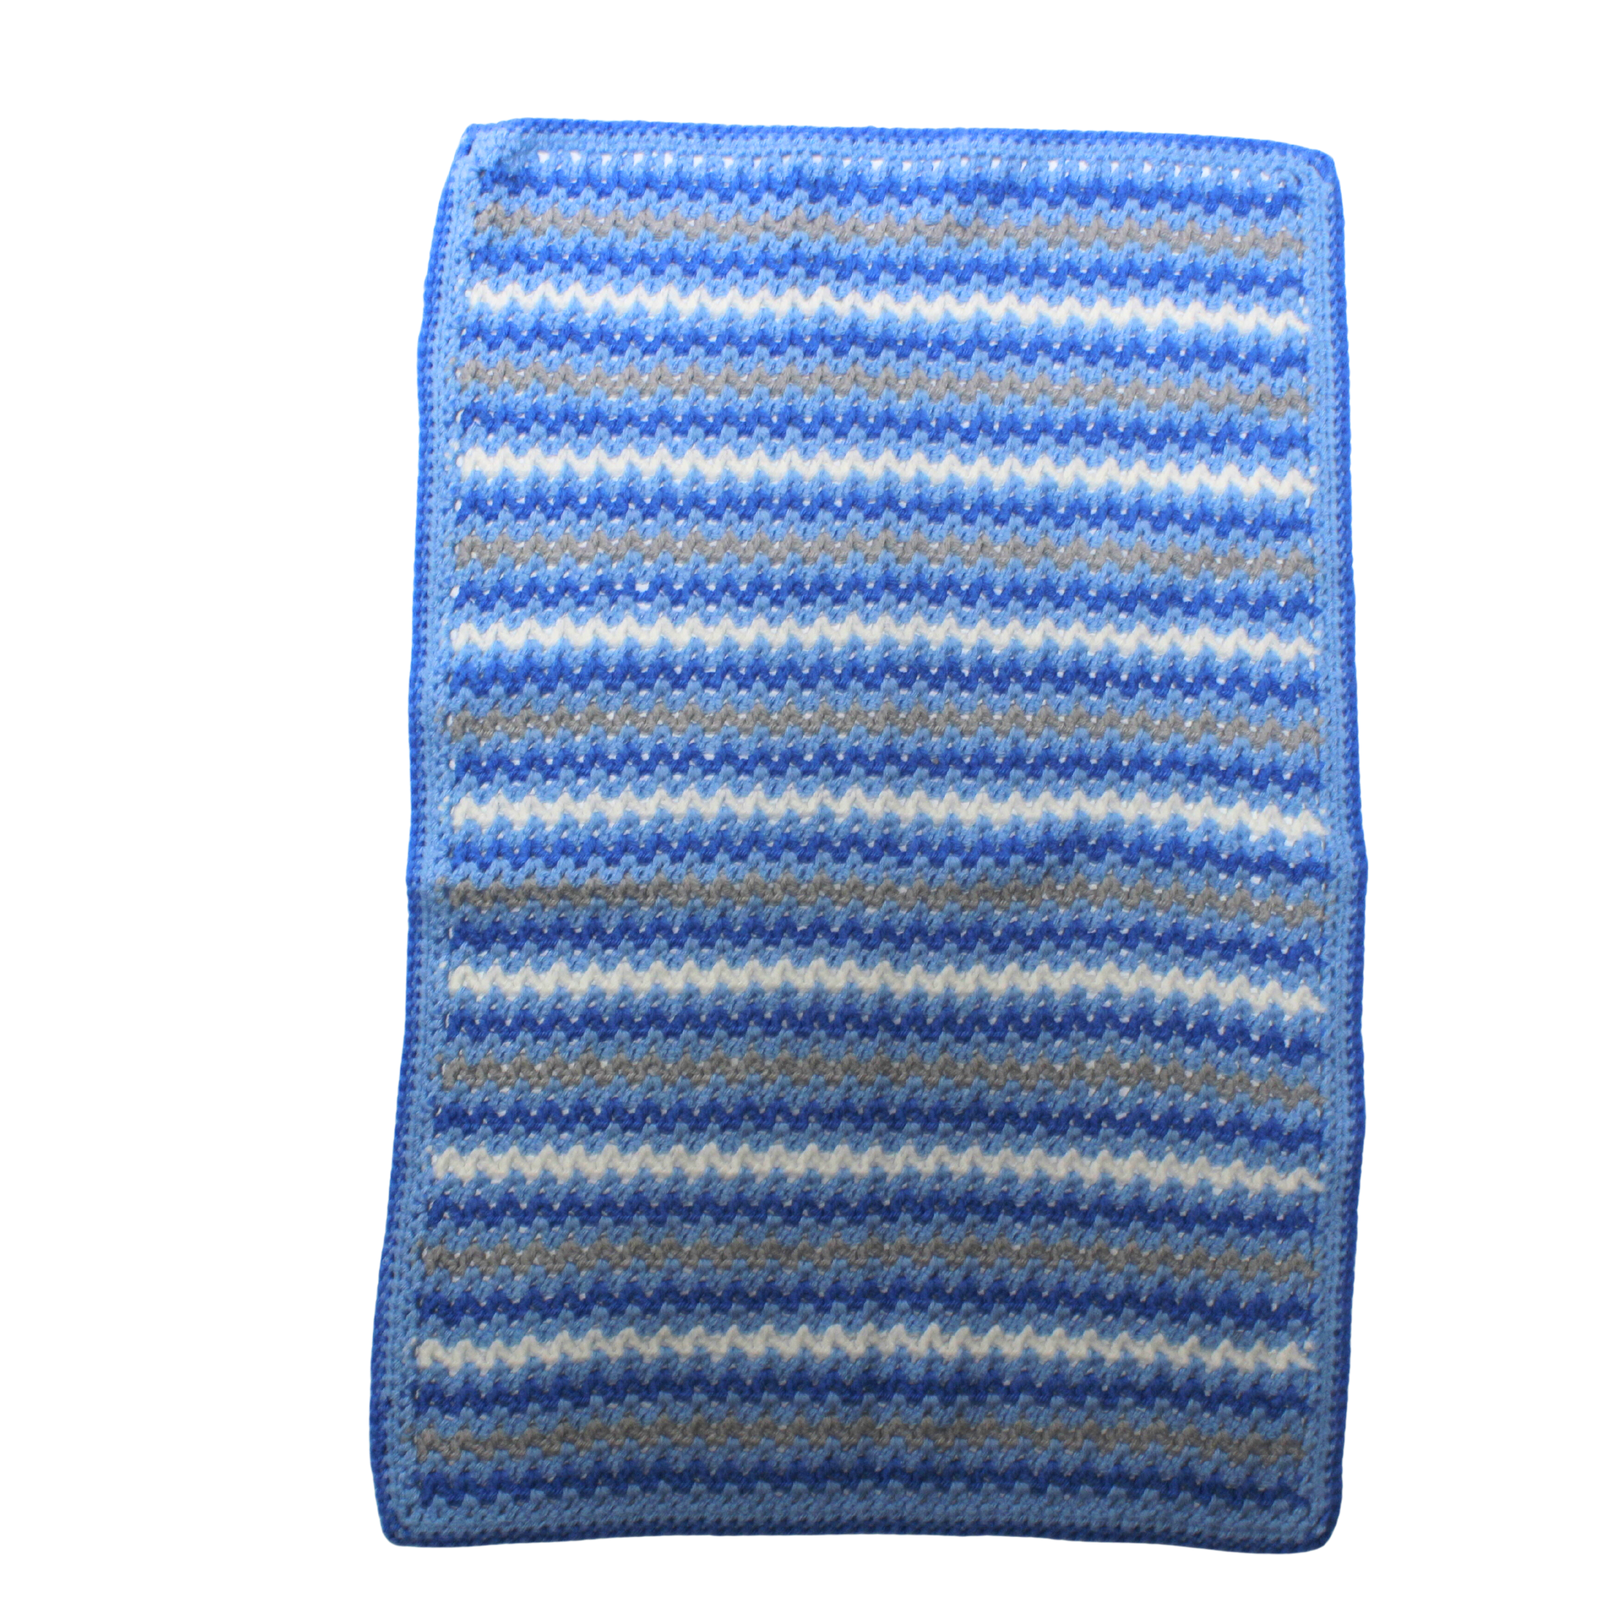 Crochet Blues Blanket